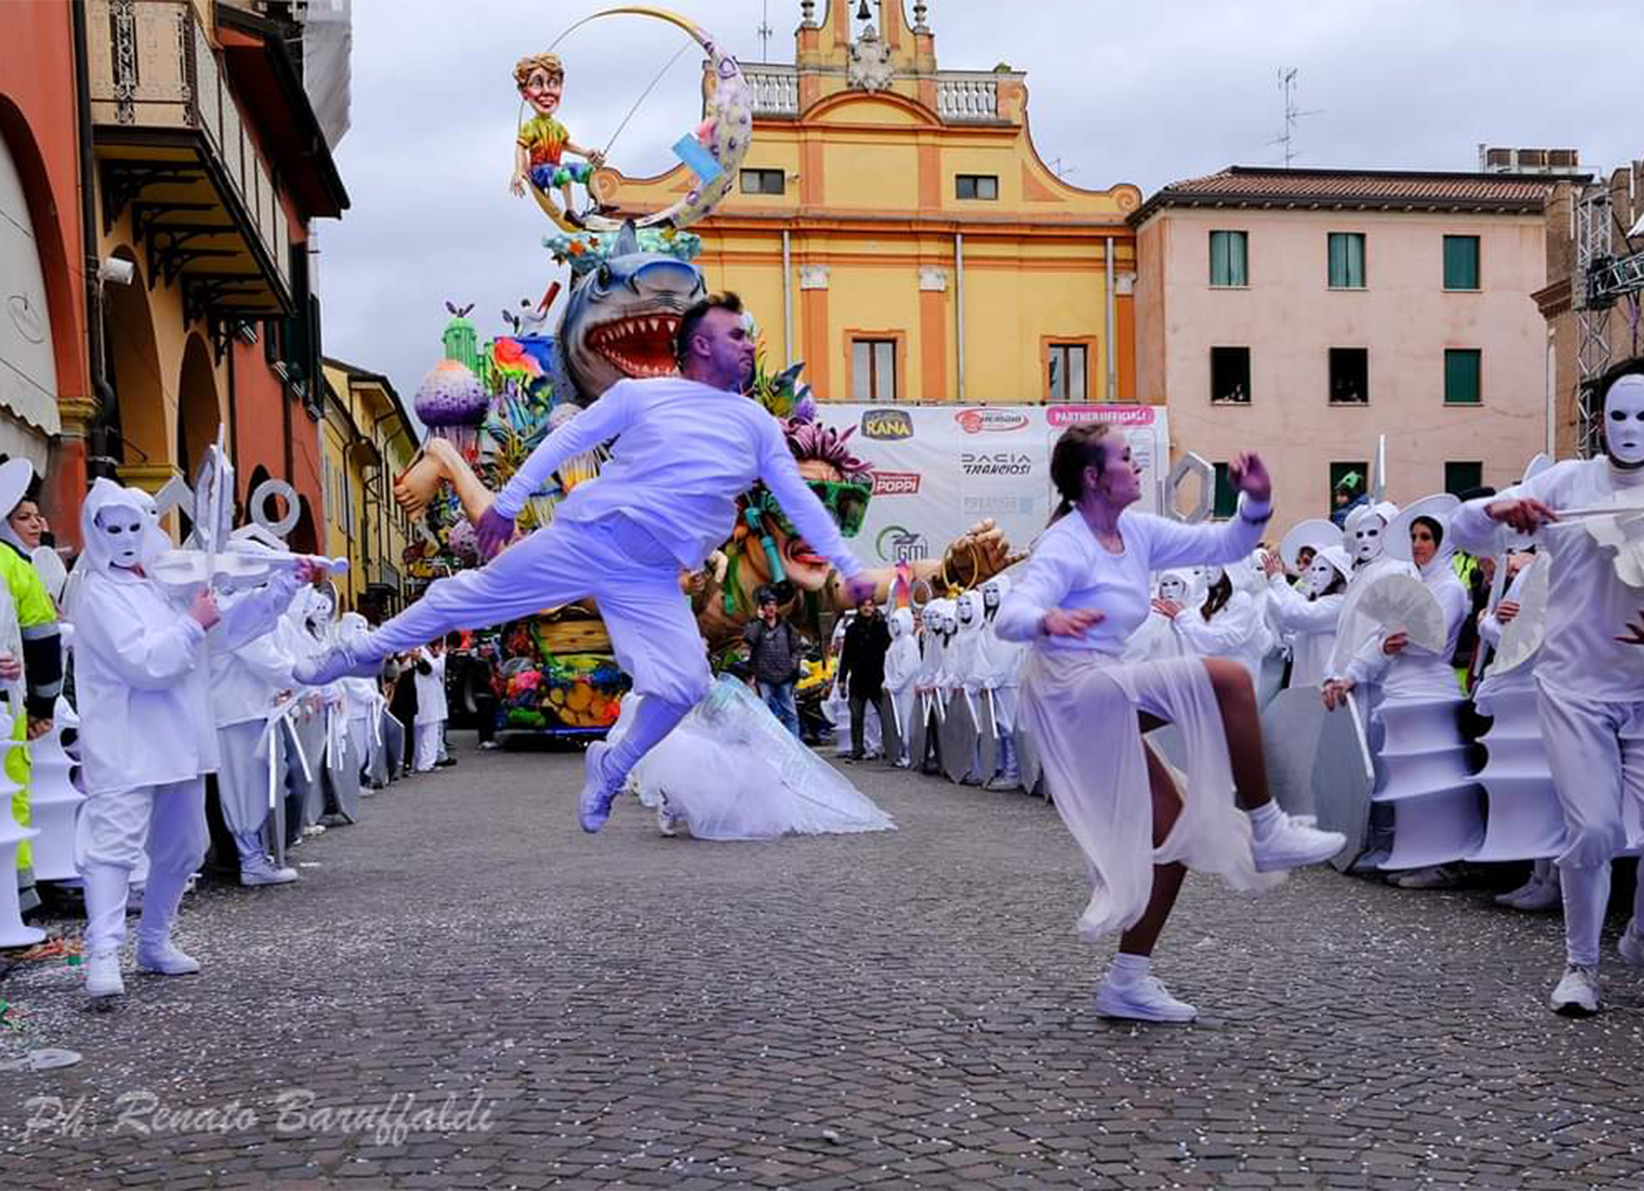 Cento (Ferrara) Carnevale d'Europa intervista alla associazione carnevalesca Mazalora